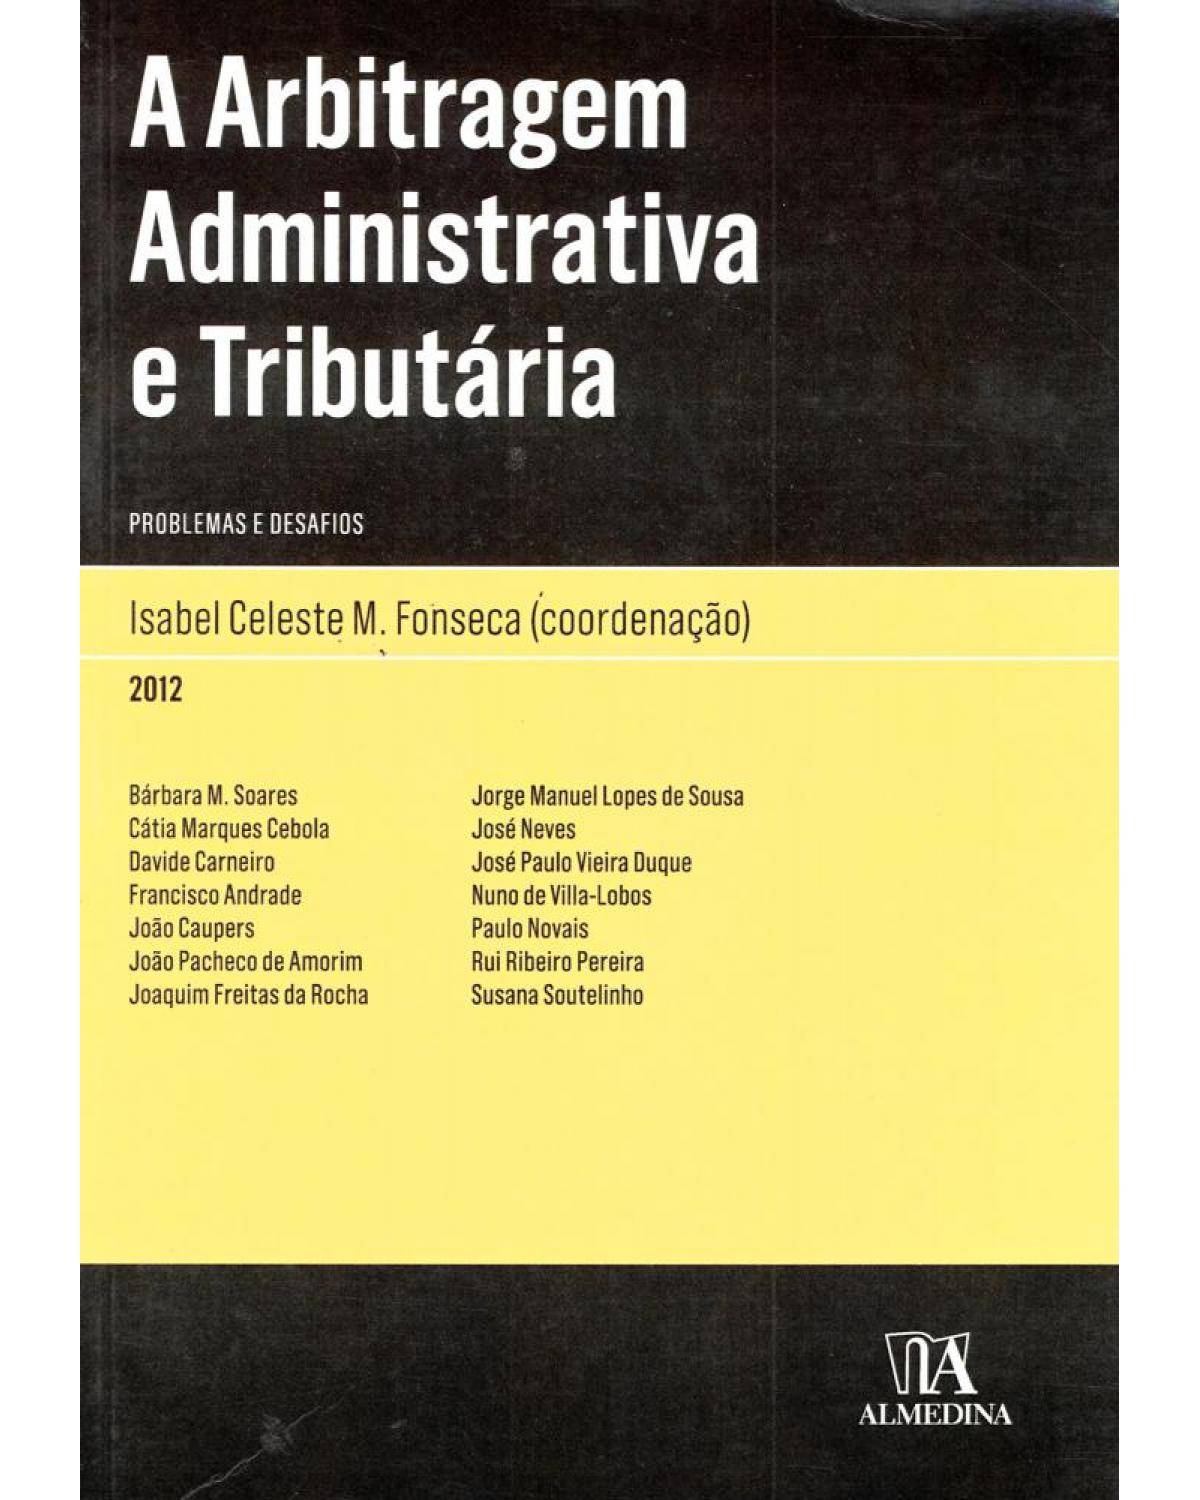 A arbitragem administrativa e tributária - problemas e desafios - 1ª Edição | 2012